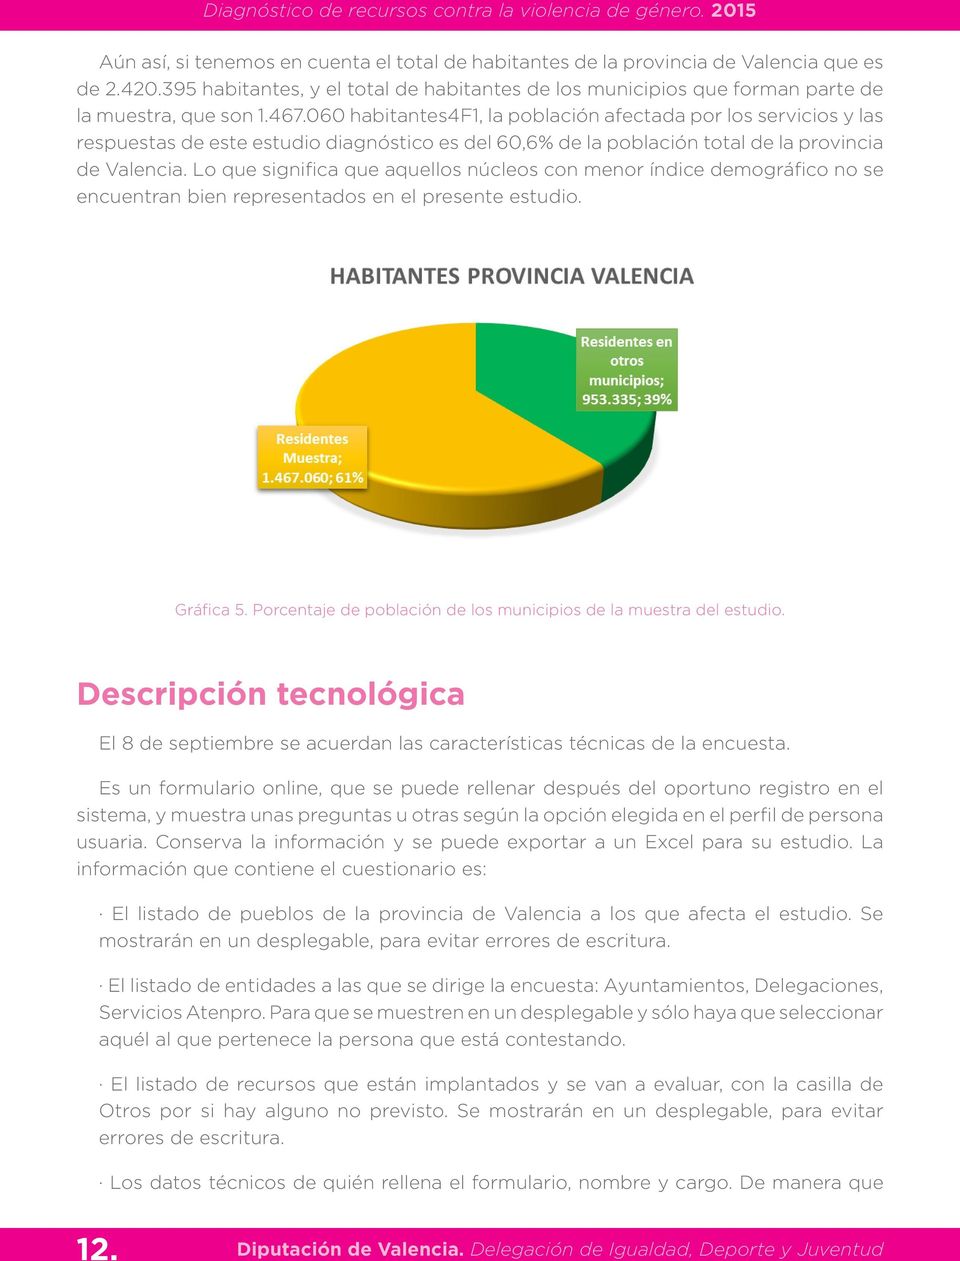 060 habitantes4f1, la población afectada por los servicios y las respuestas de este estudio diagnóstico es del 60,6% de la población total de la provincia de Valencia.